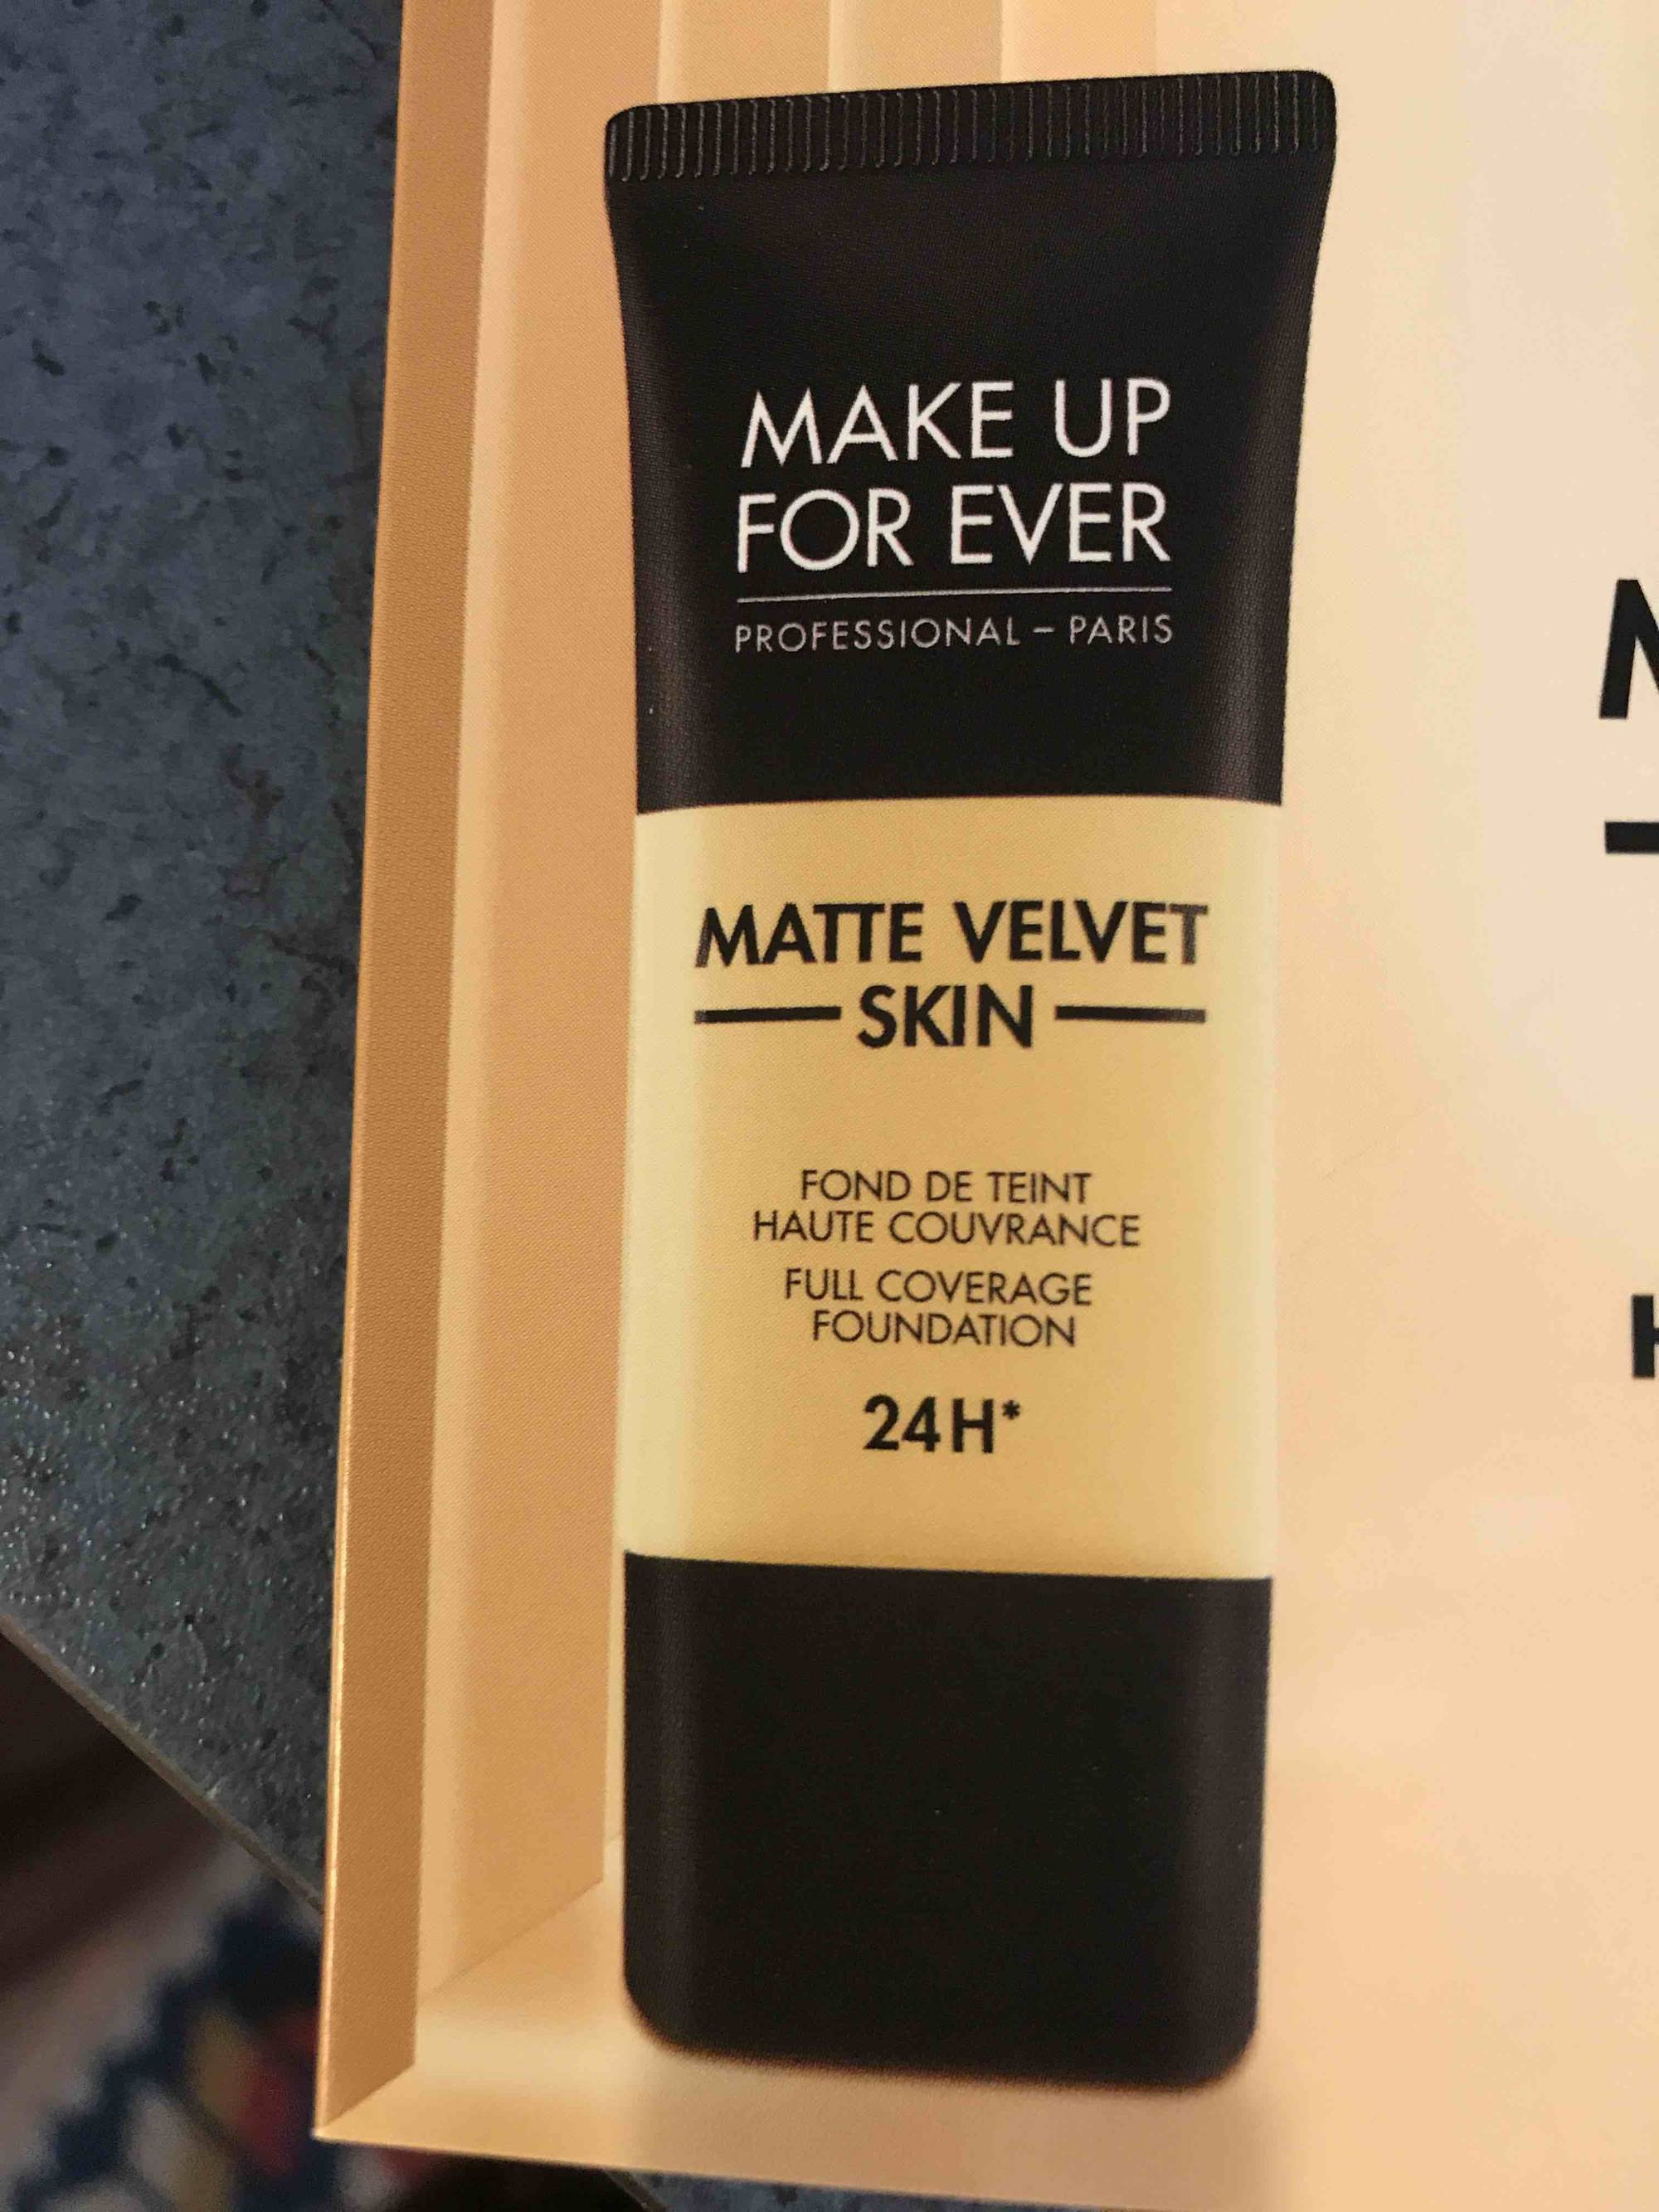 MAKE UP FOR EVER - Matte velvet skin - Fond de teint haute couvrance 24 h